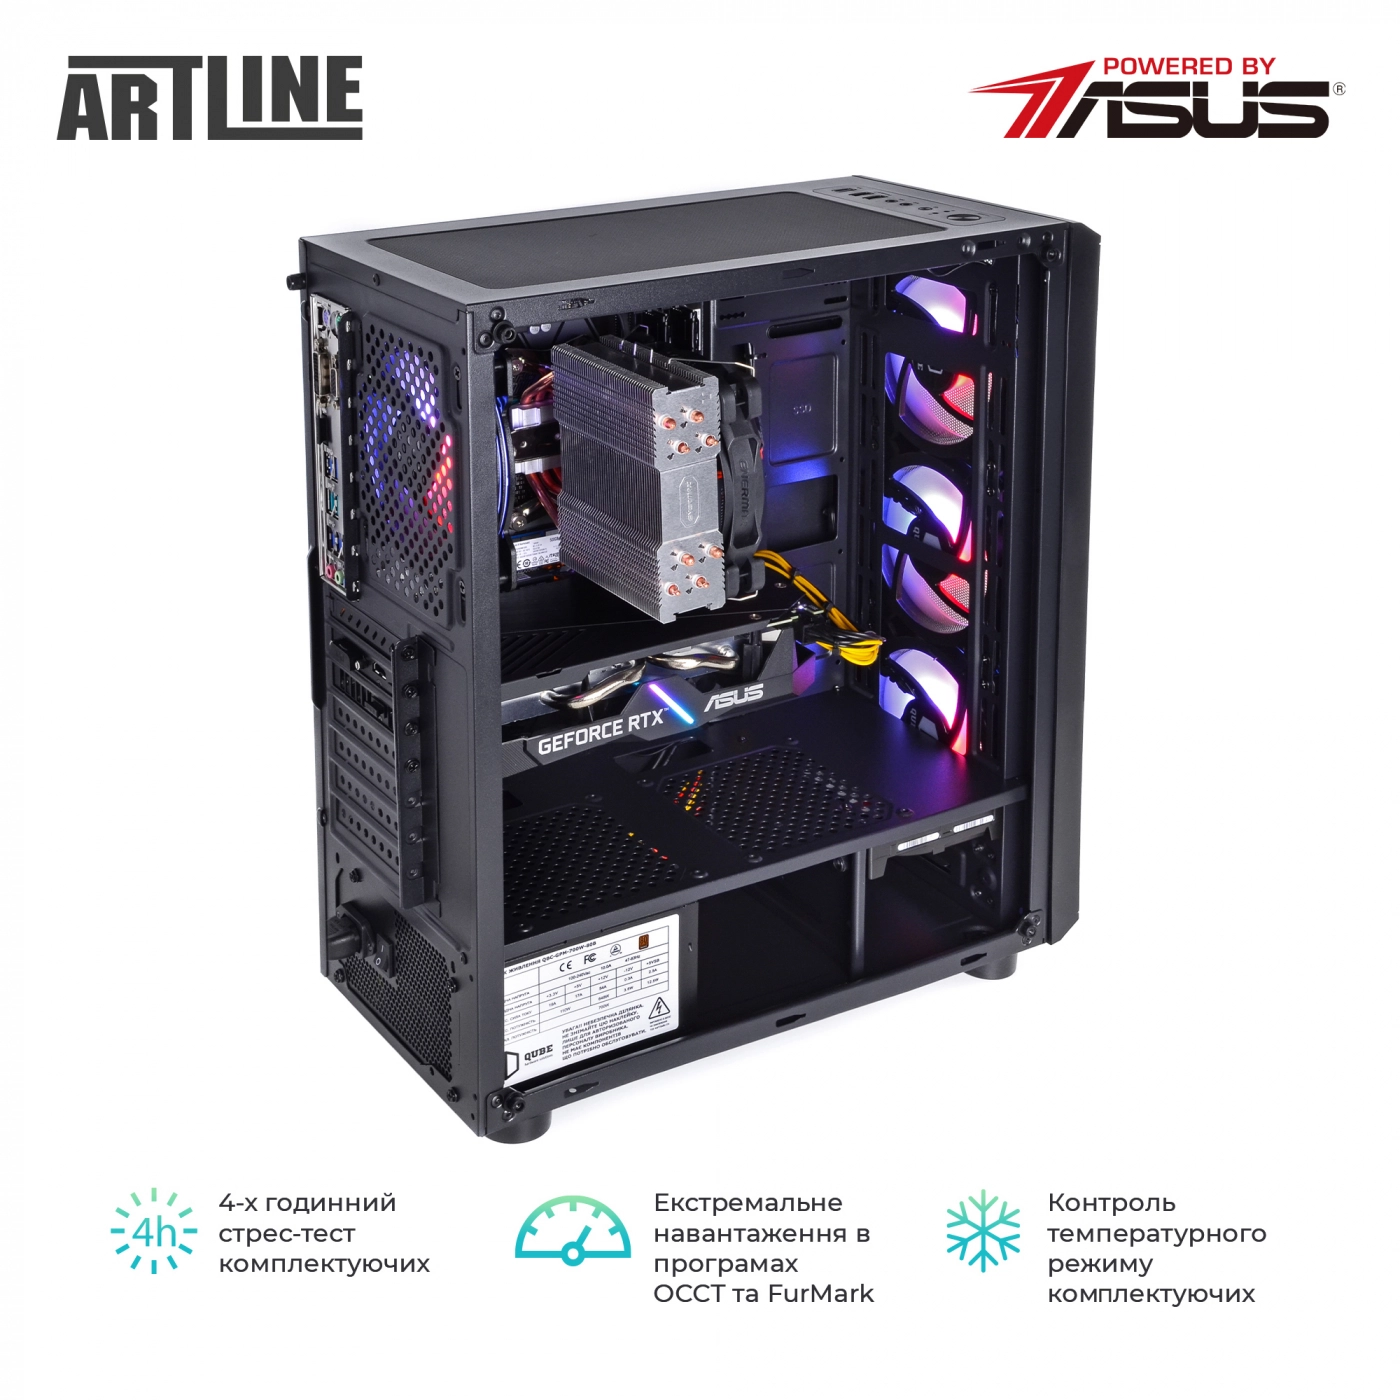 Купить Компьютер ARTLINE Gaming X59v31 - фото 9